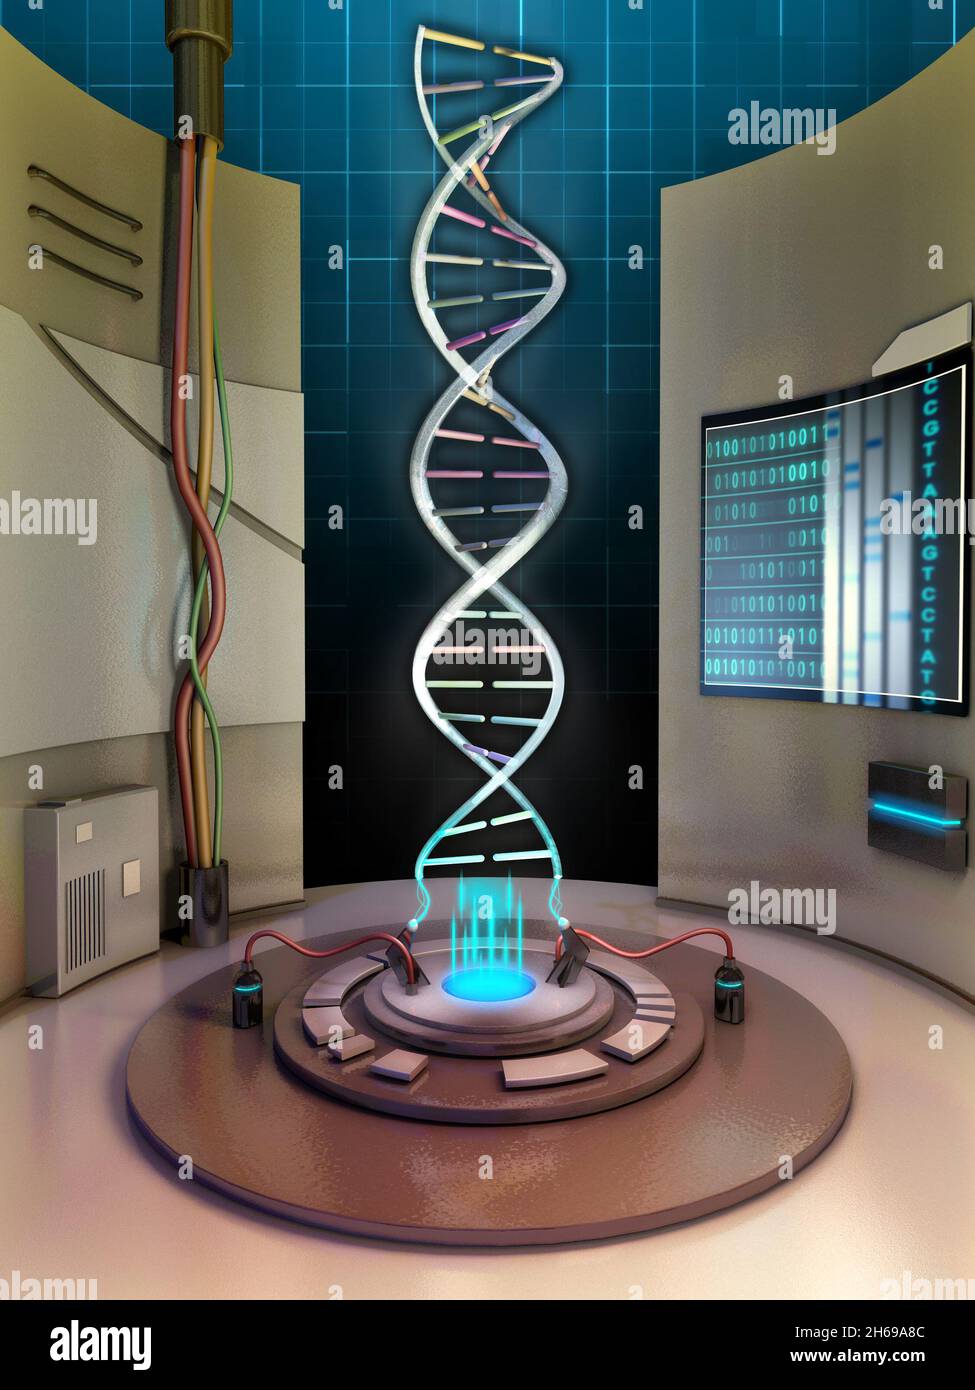 Erstellen einer dna-Helix in einer Hochtechnologiekammer. Digitale Illustration. Stockfoto